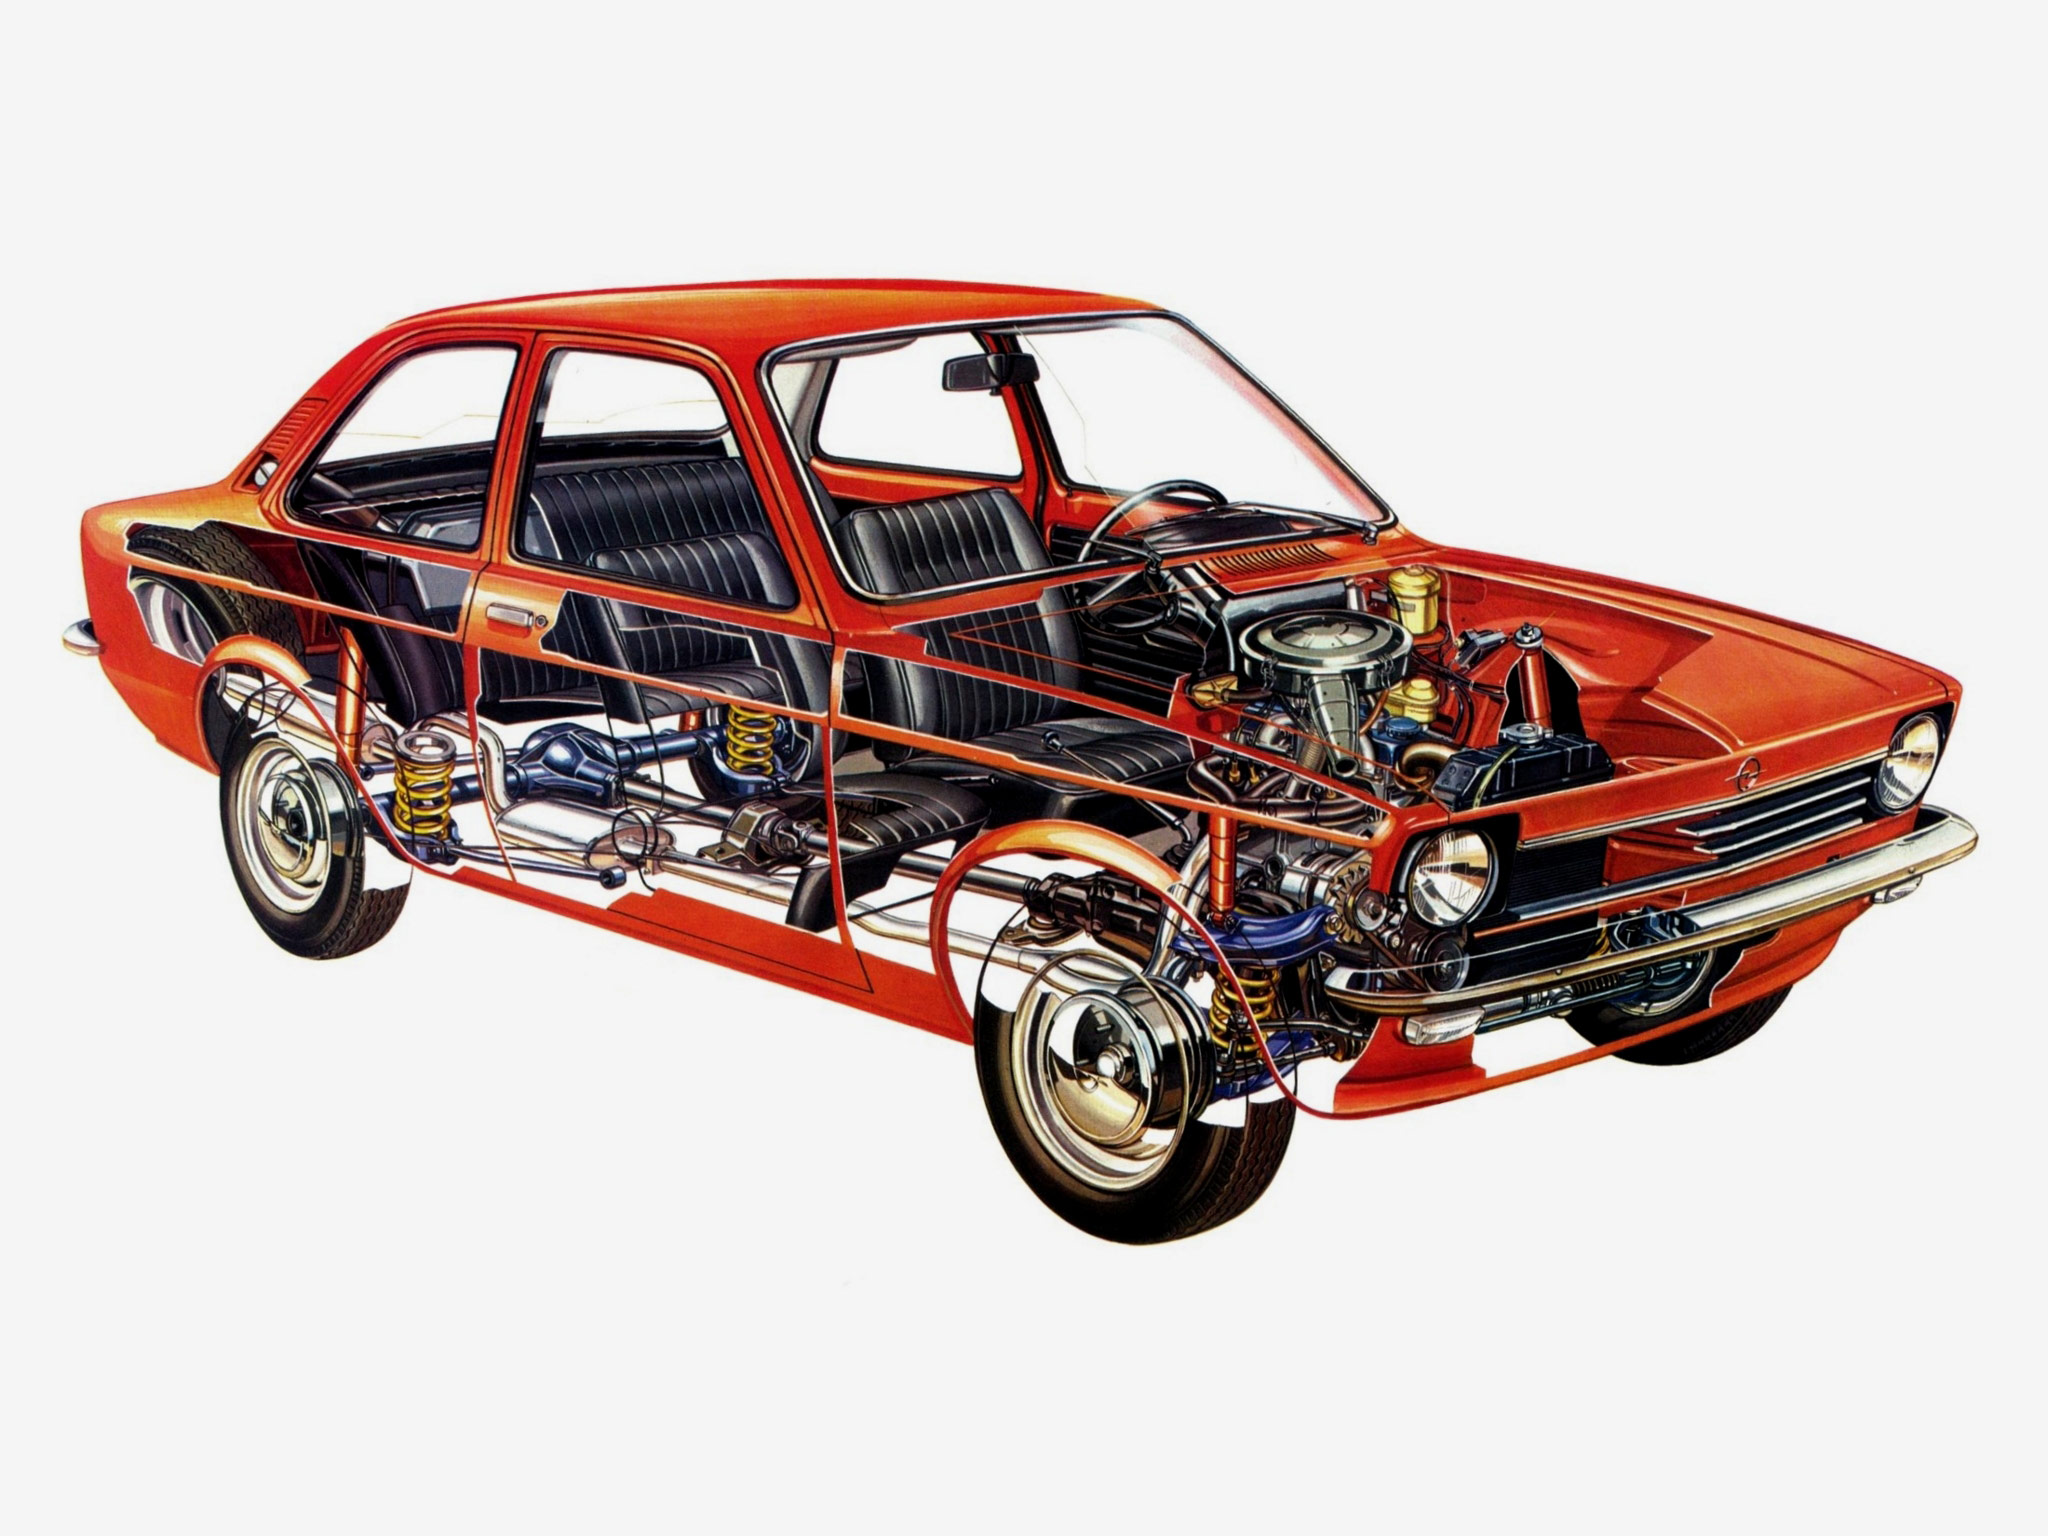 Opel Kadett sedan 1973 cutaway drawing